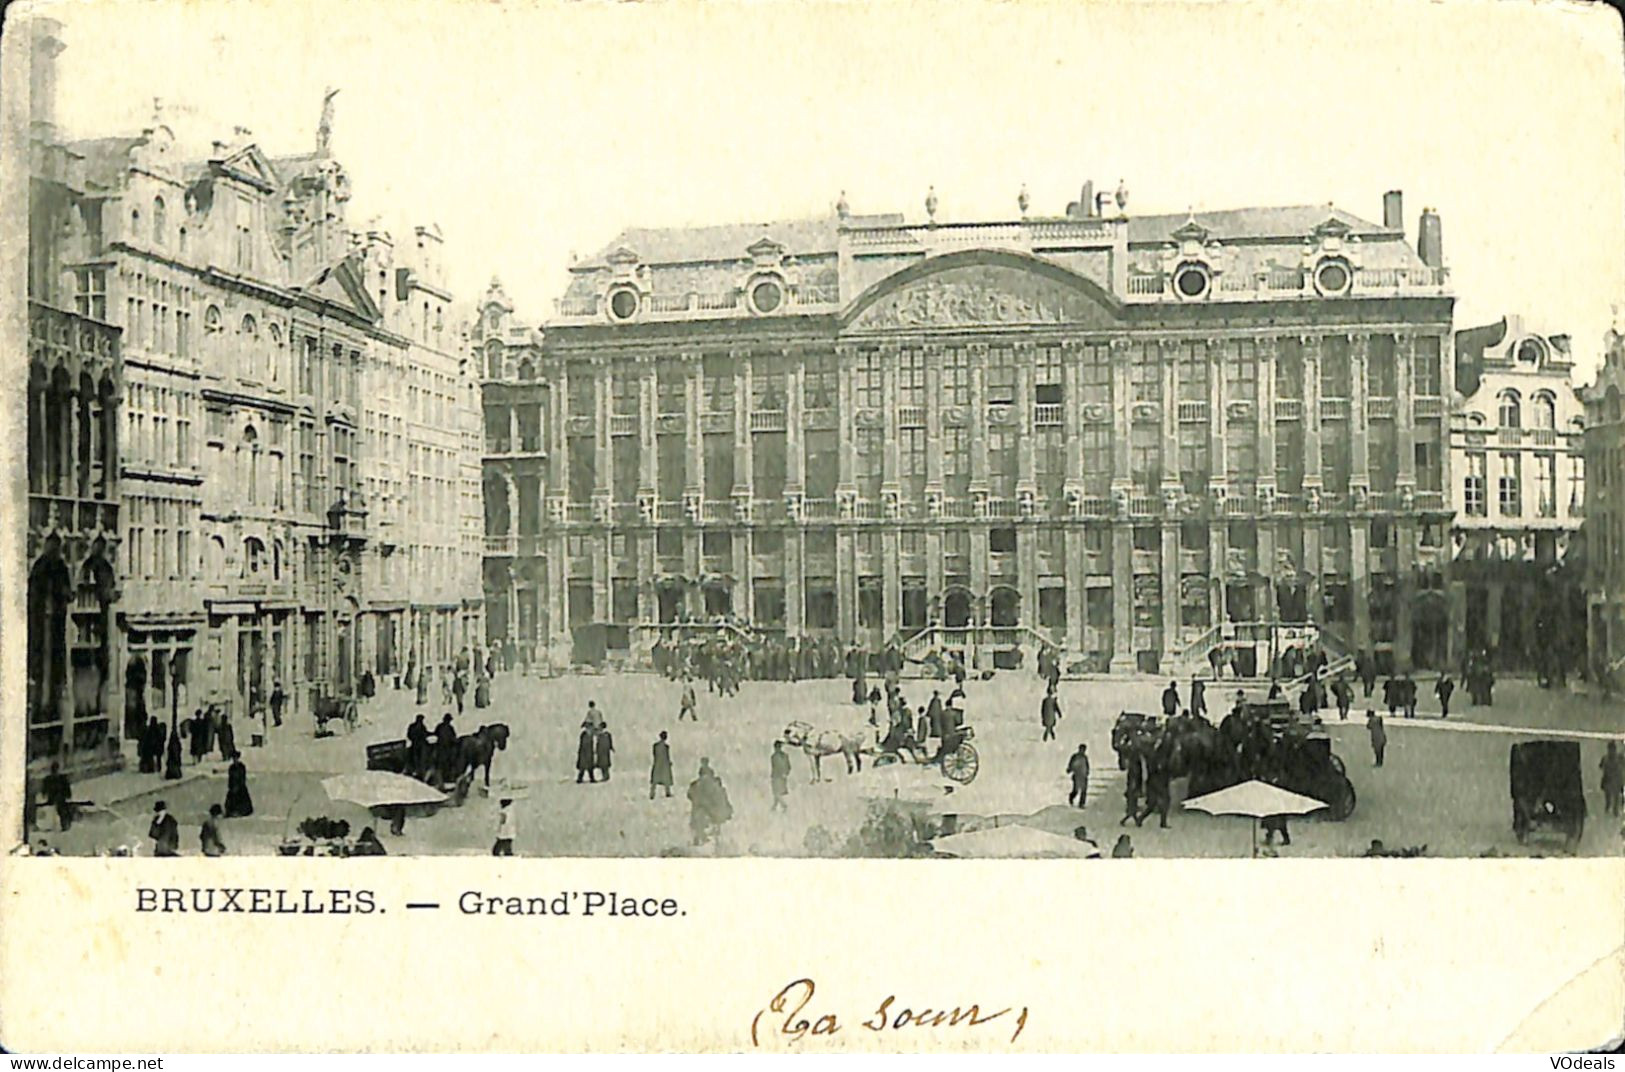 Belgique - Brussel - Bruxelles - Grand'Place - Squares